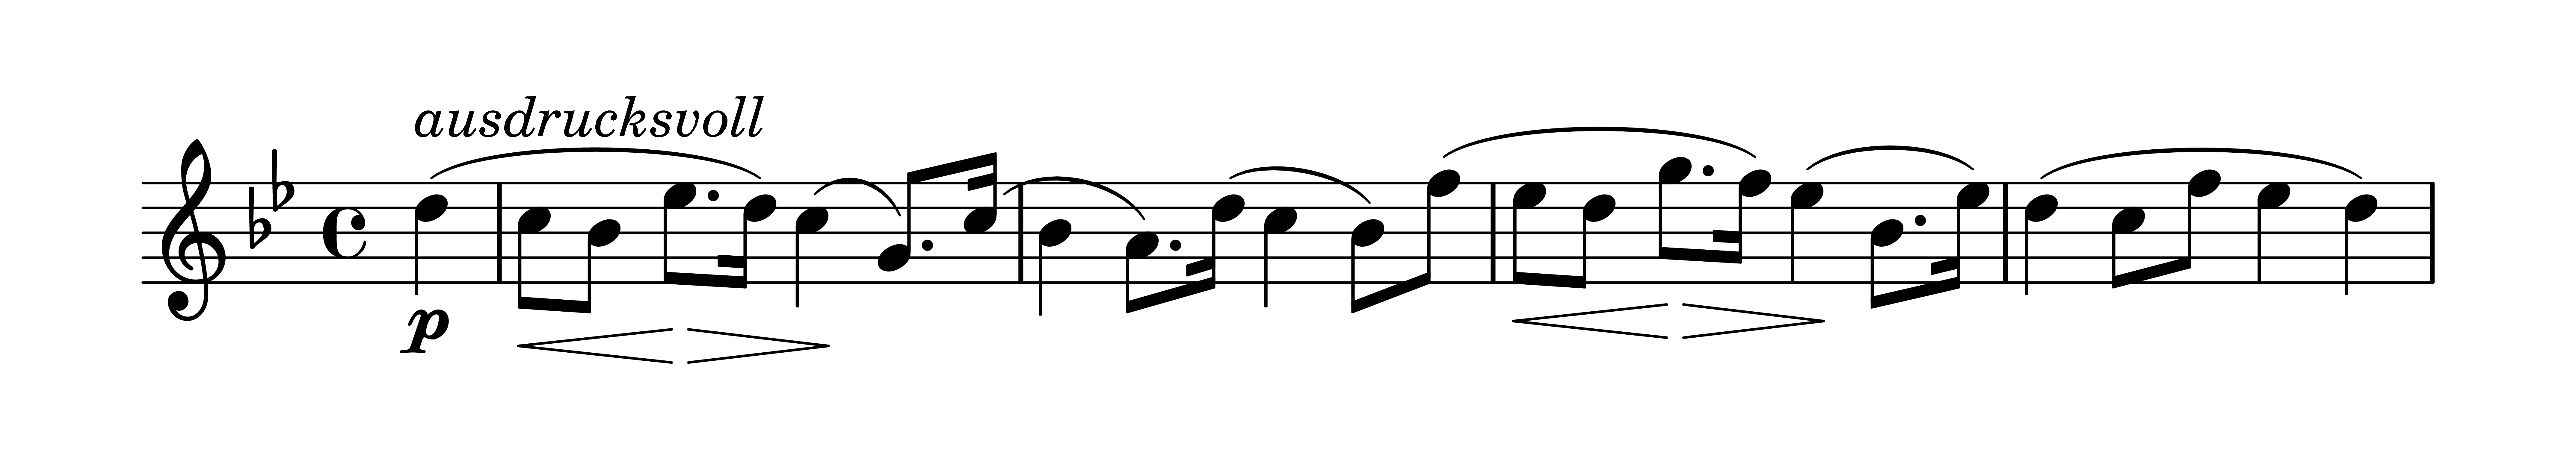 Es. 11: Robert Schumann, Concerto per violino e
                orchestra in re minore WoO 23, II mov., bb. 5-8 (violino)